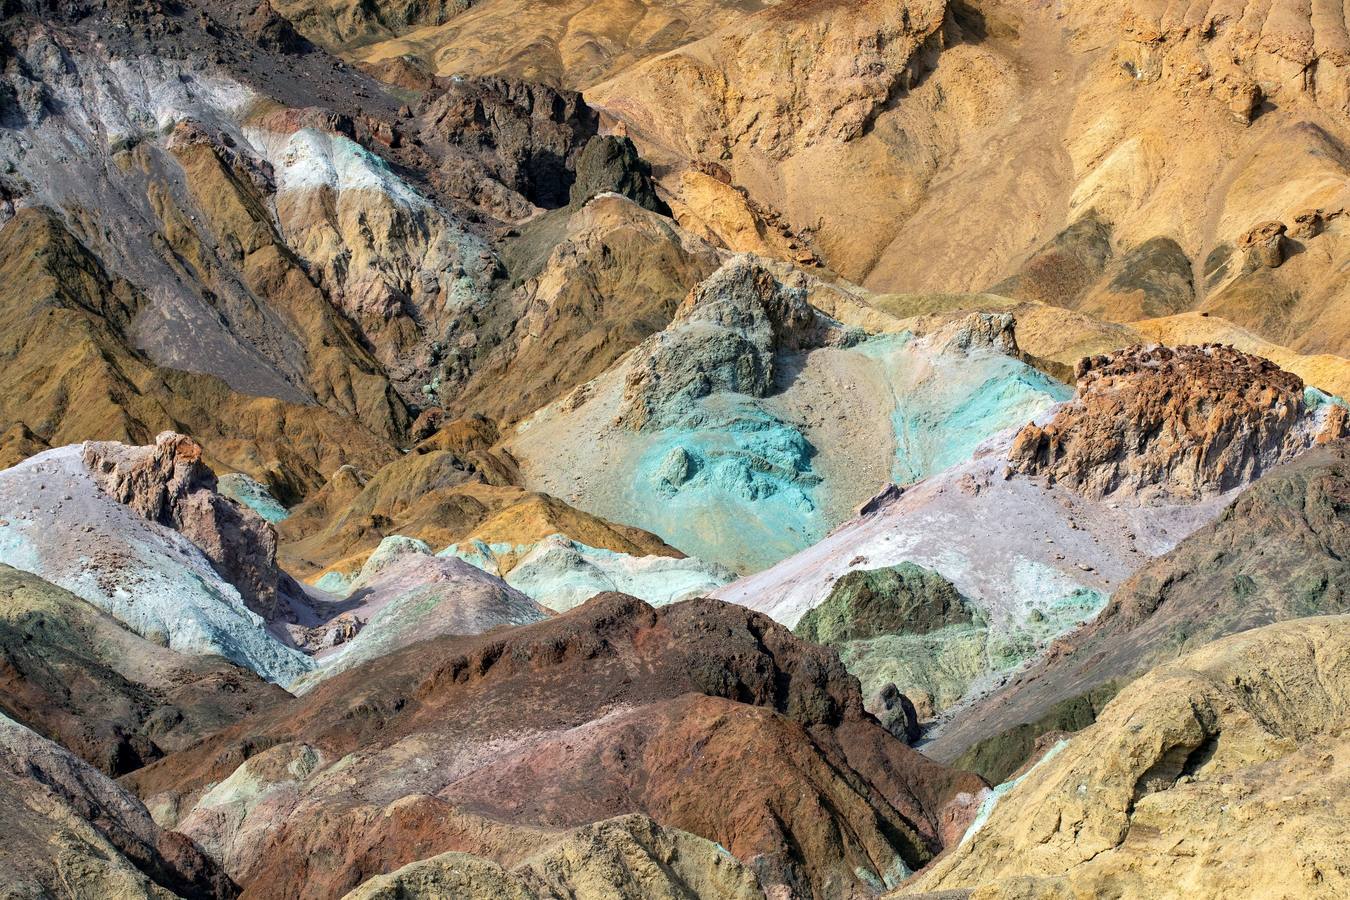 Imagen que muestra la Paleta del Pintor, con distintas tonalidades debido a los diversos depósitos minerales en el Valle de la Muerte, cercano a Furnace Creek